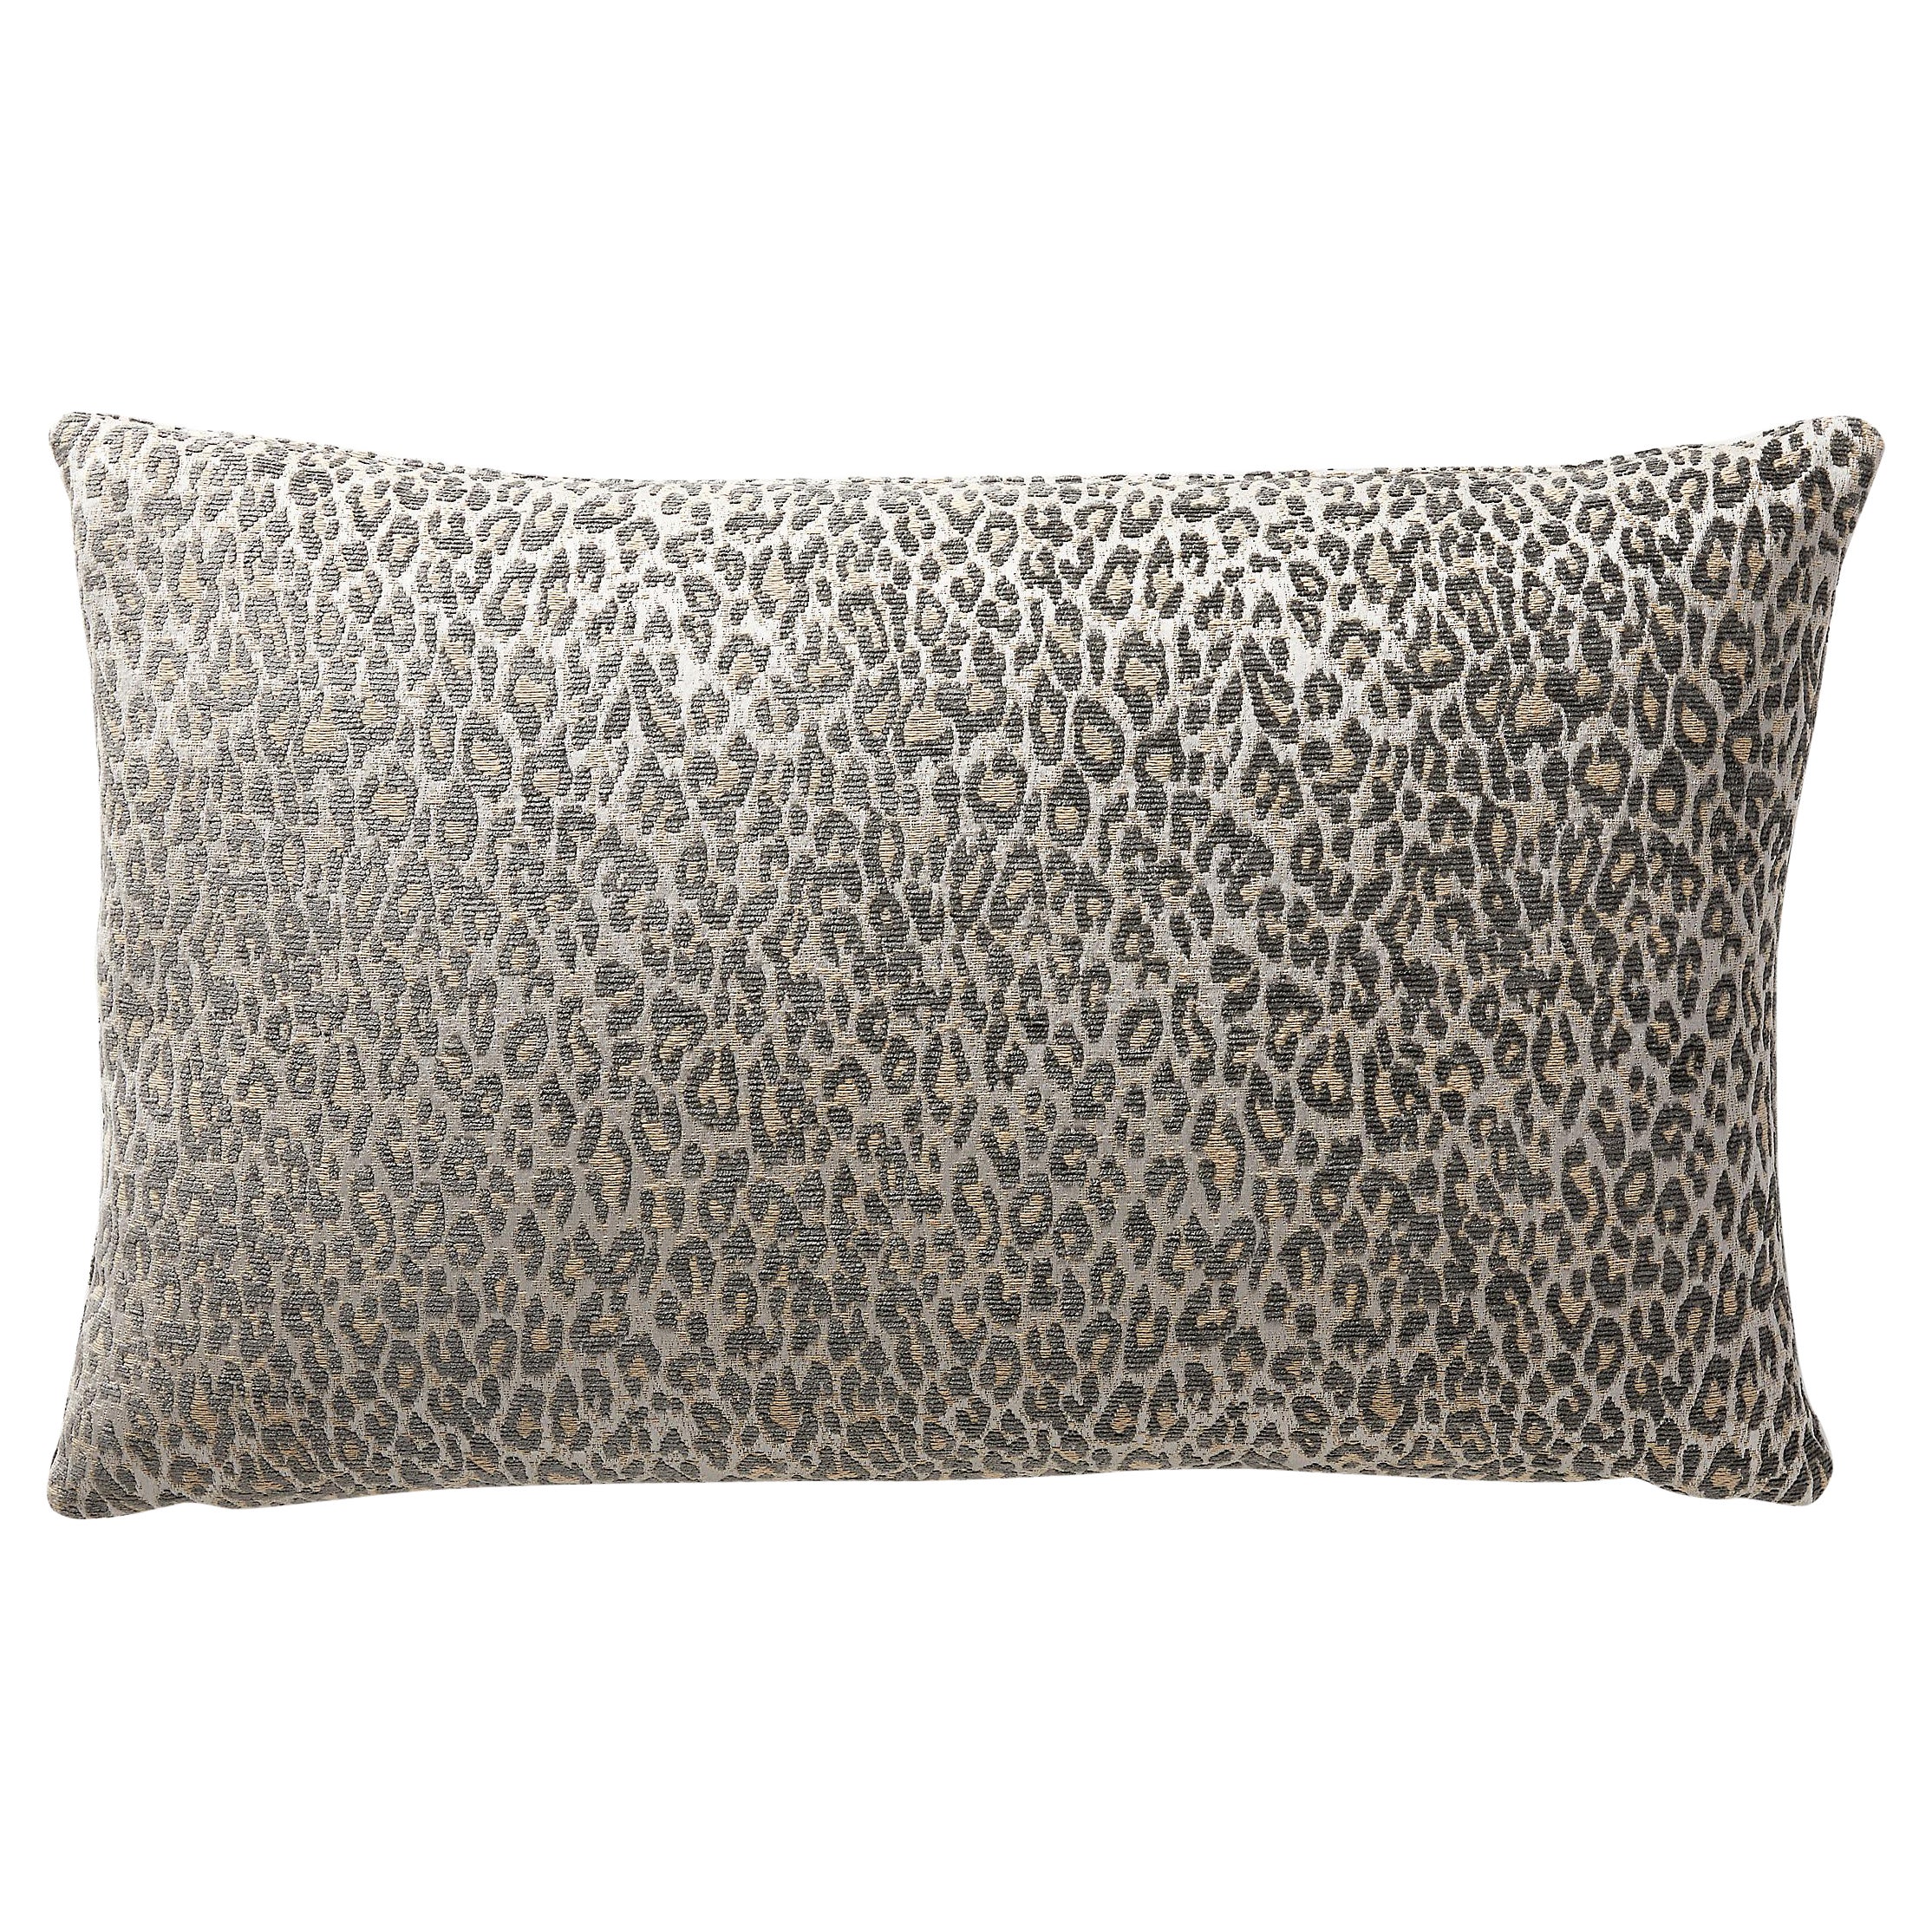 Leopard Lumbar Pillow For Sale